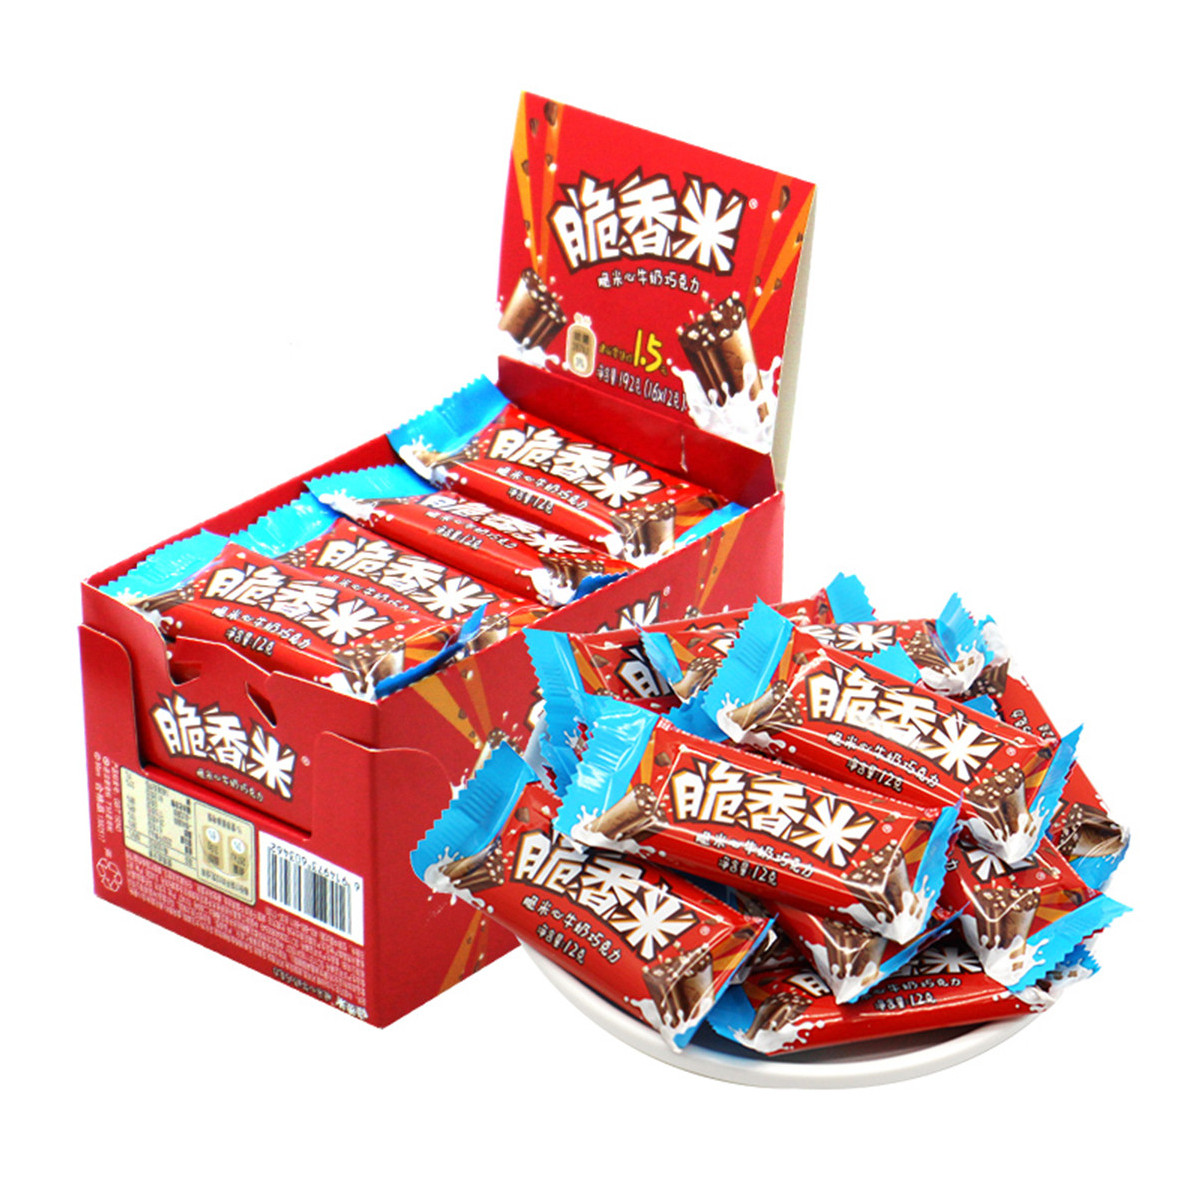 德芙心语巧克力礼盒98g : 亚马逊中国: 杂货